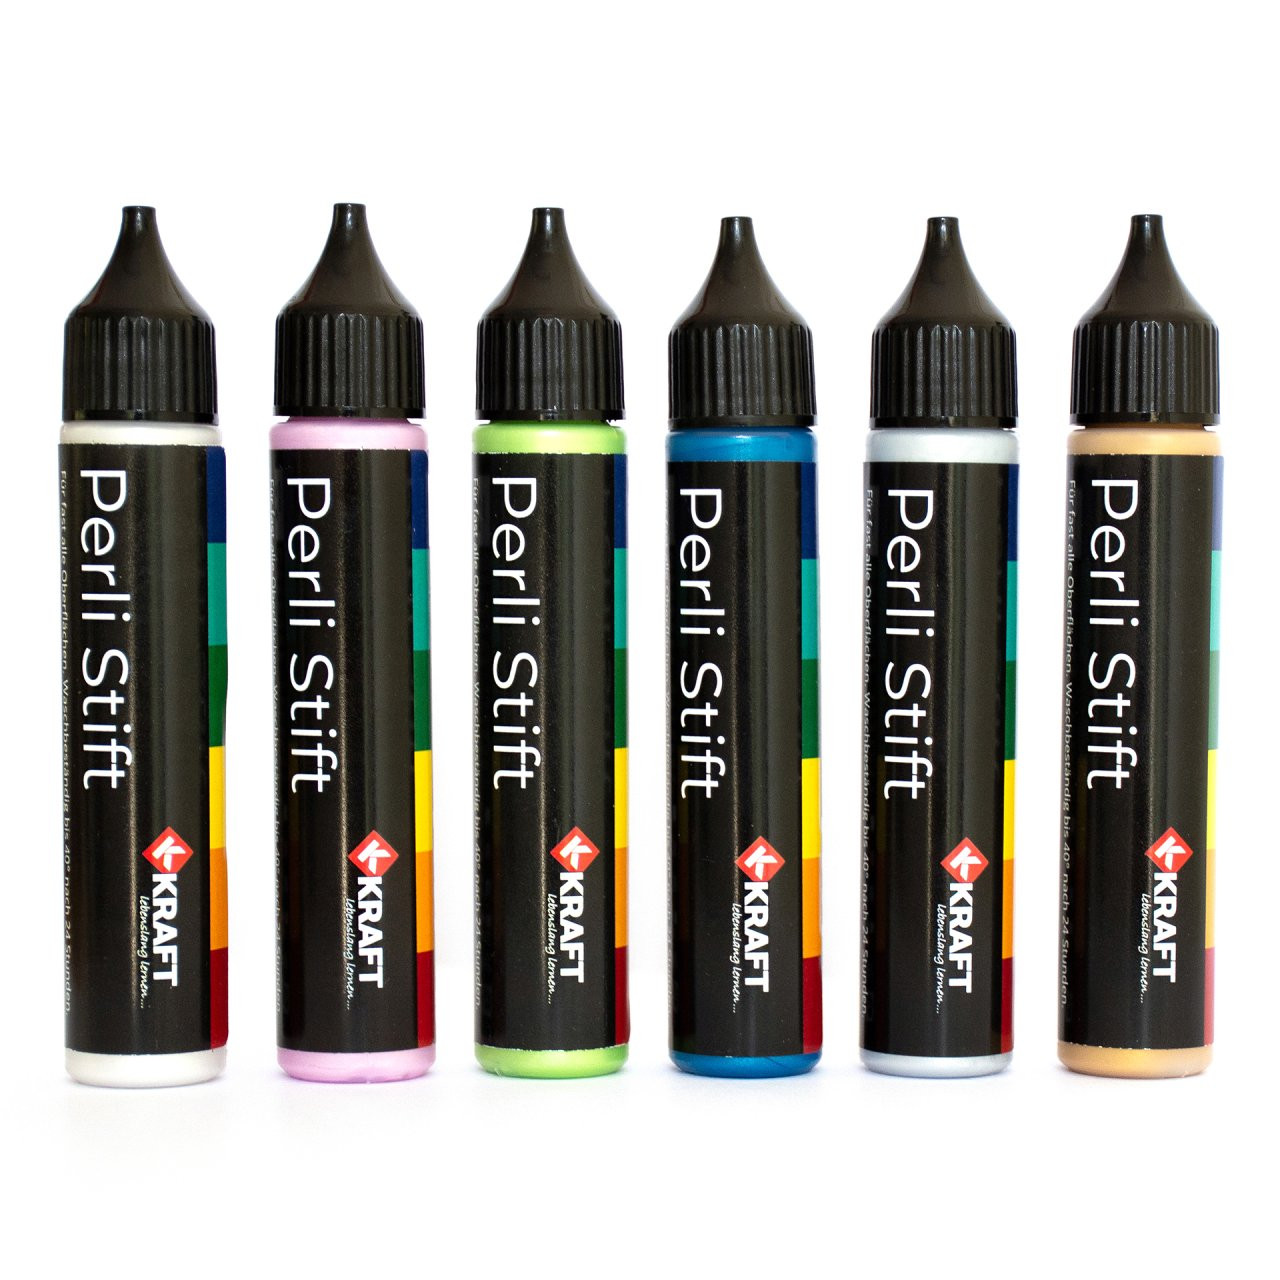 Perli Stifte, in 6 Farben erhältlich